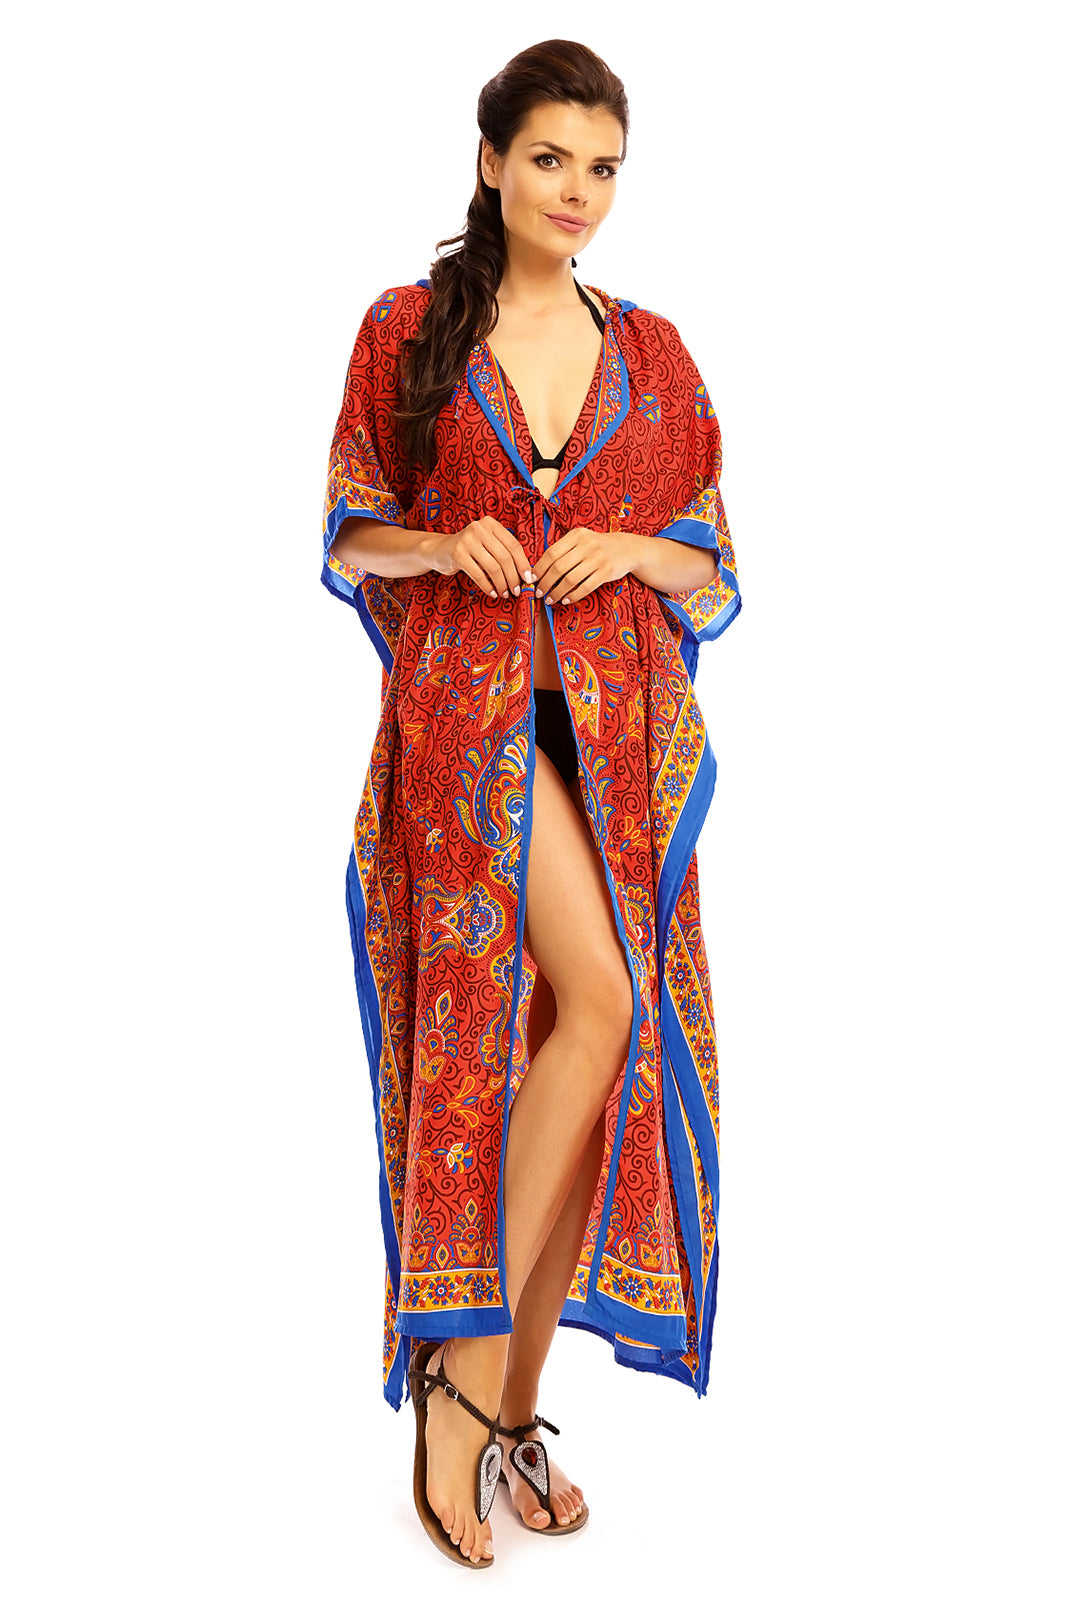 Ladies Hooded Kimono Gown Kaftan in Tribal Print  -  Red - Pack of 12